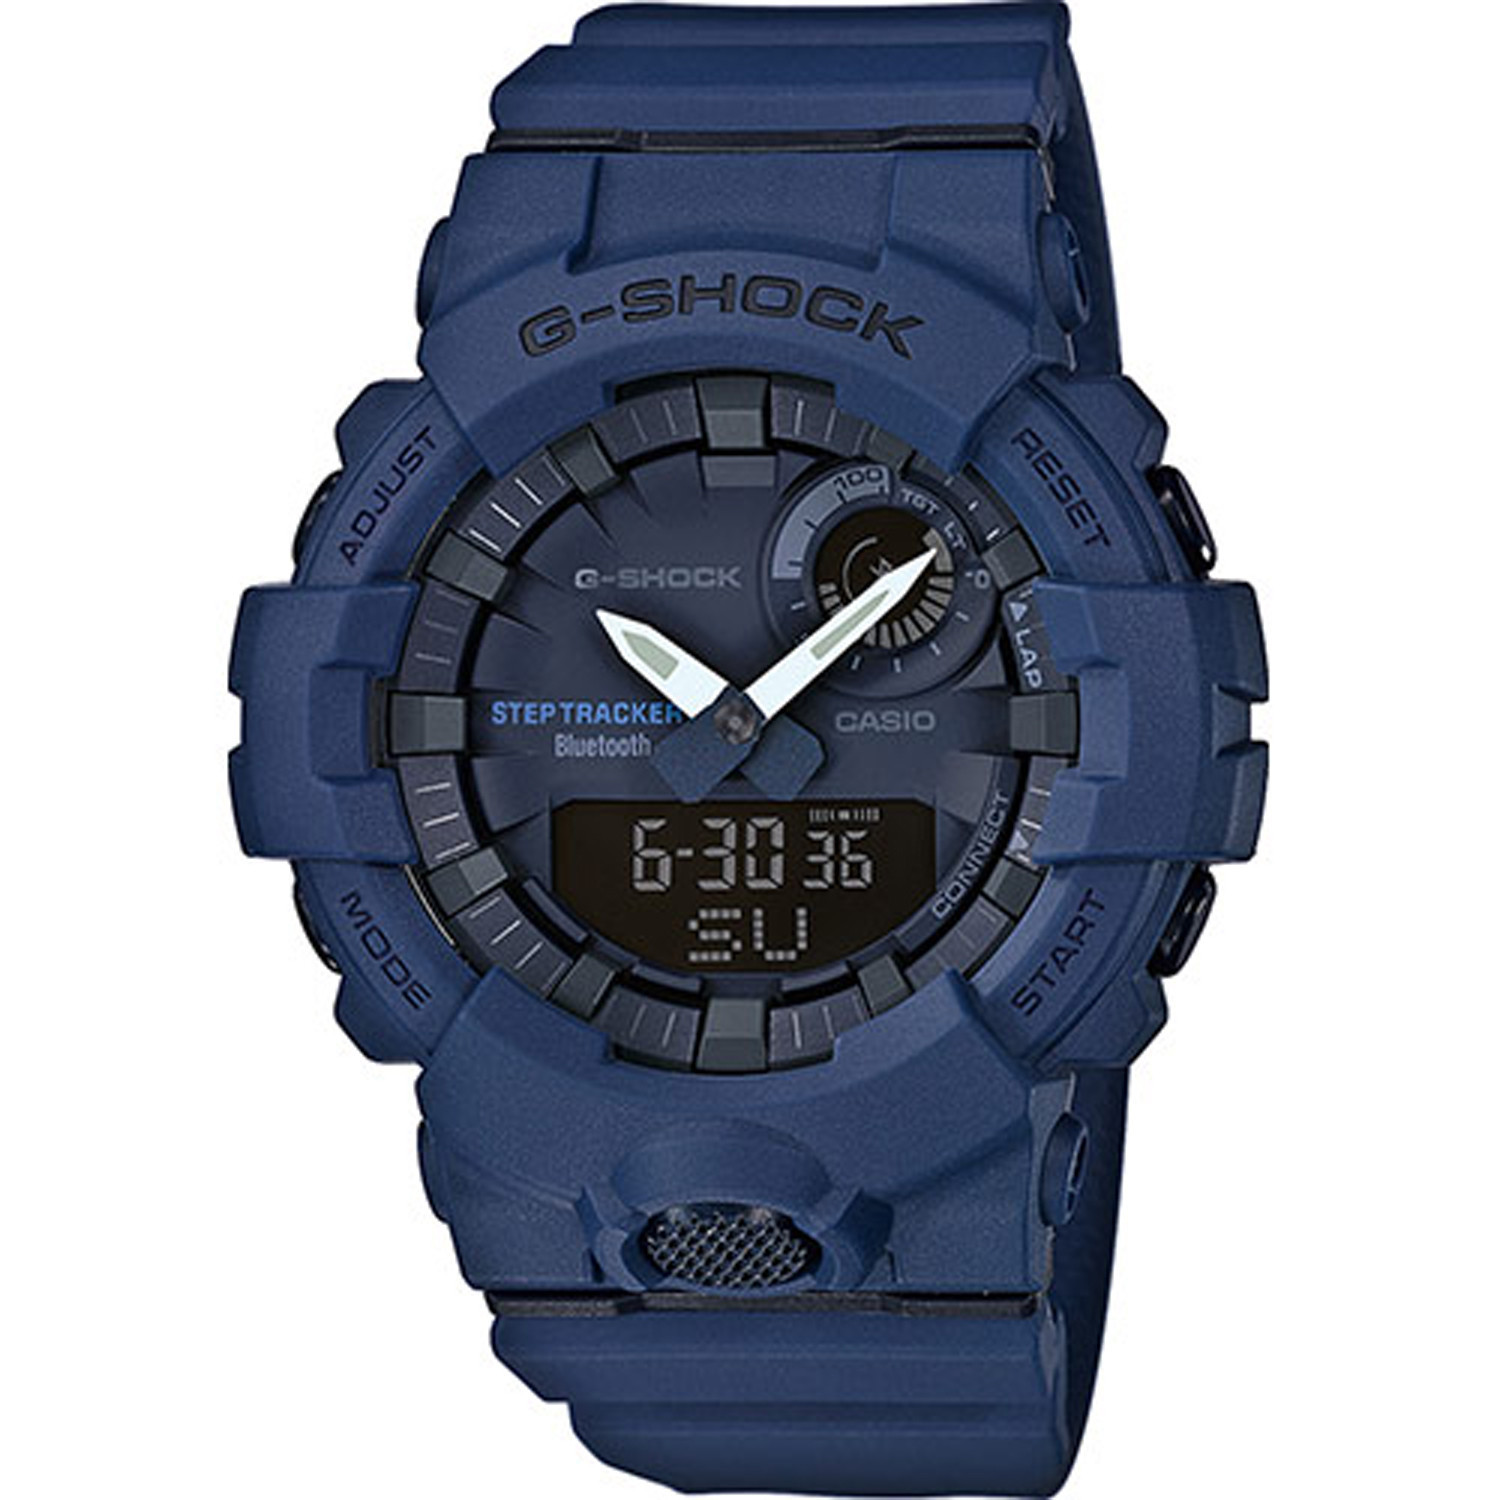 Montre Casio G-Shock bleue
Bluetooth